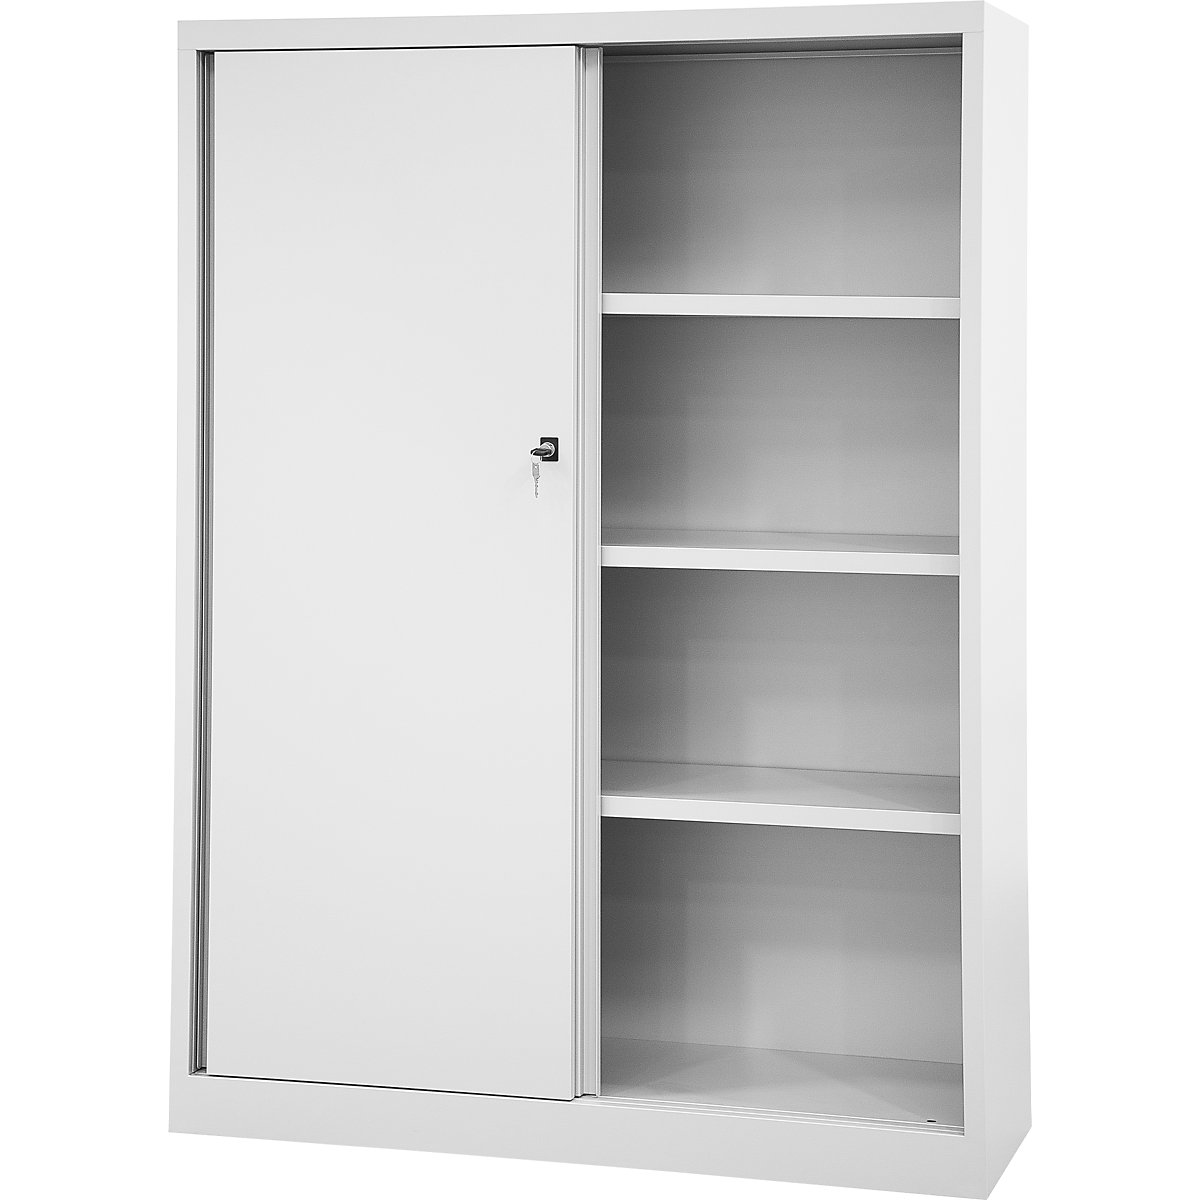 ECO sliding door cupboard – BISLEY, 3 shelves, 4 file heights, light grey-8